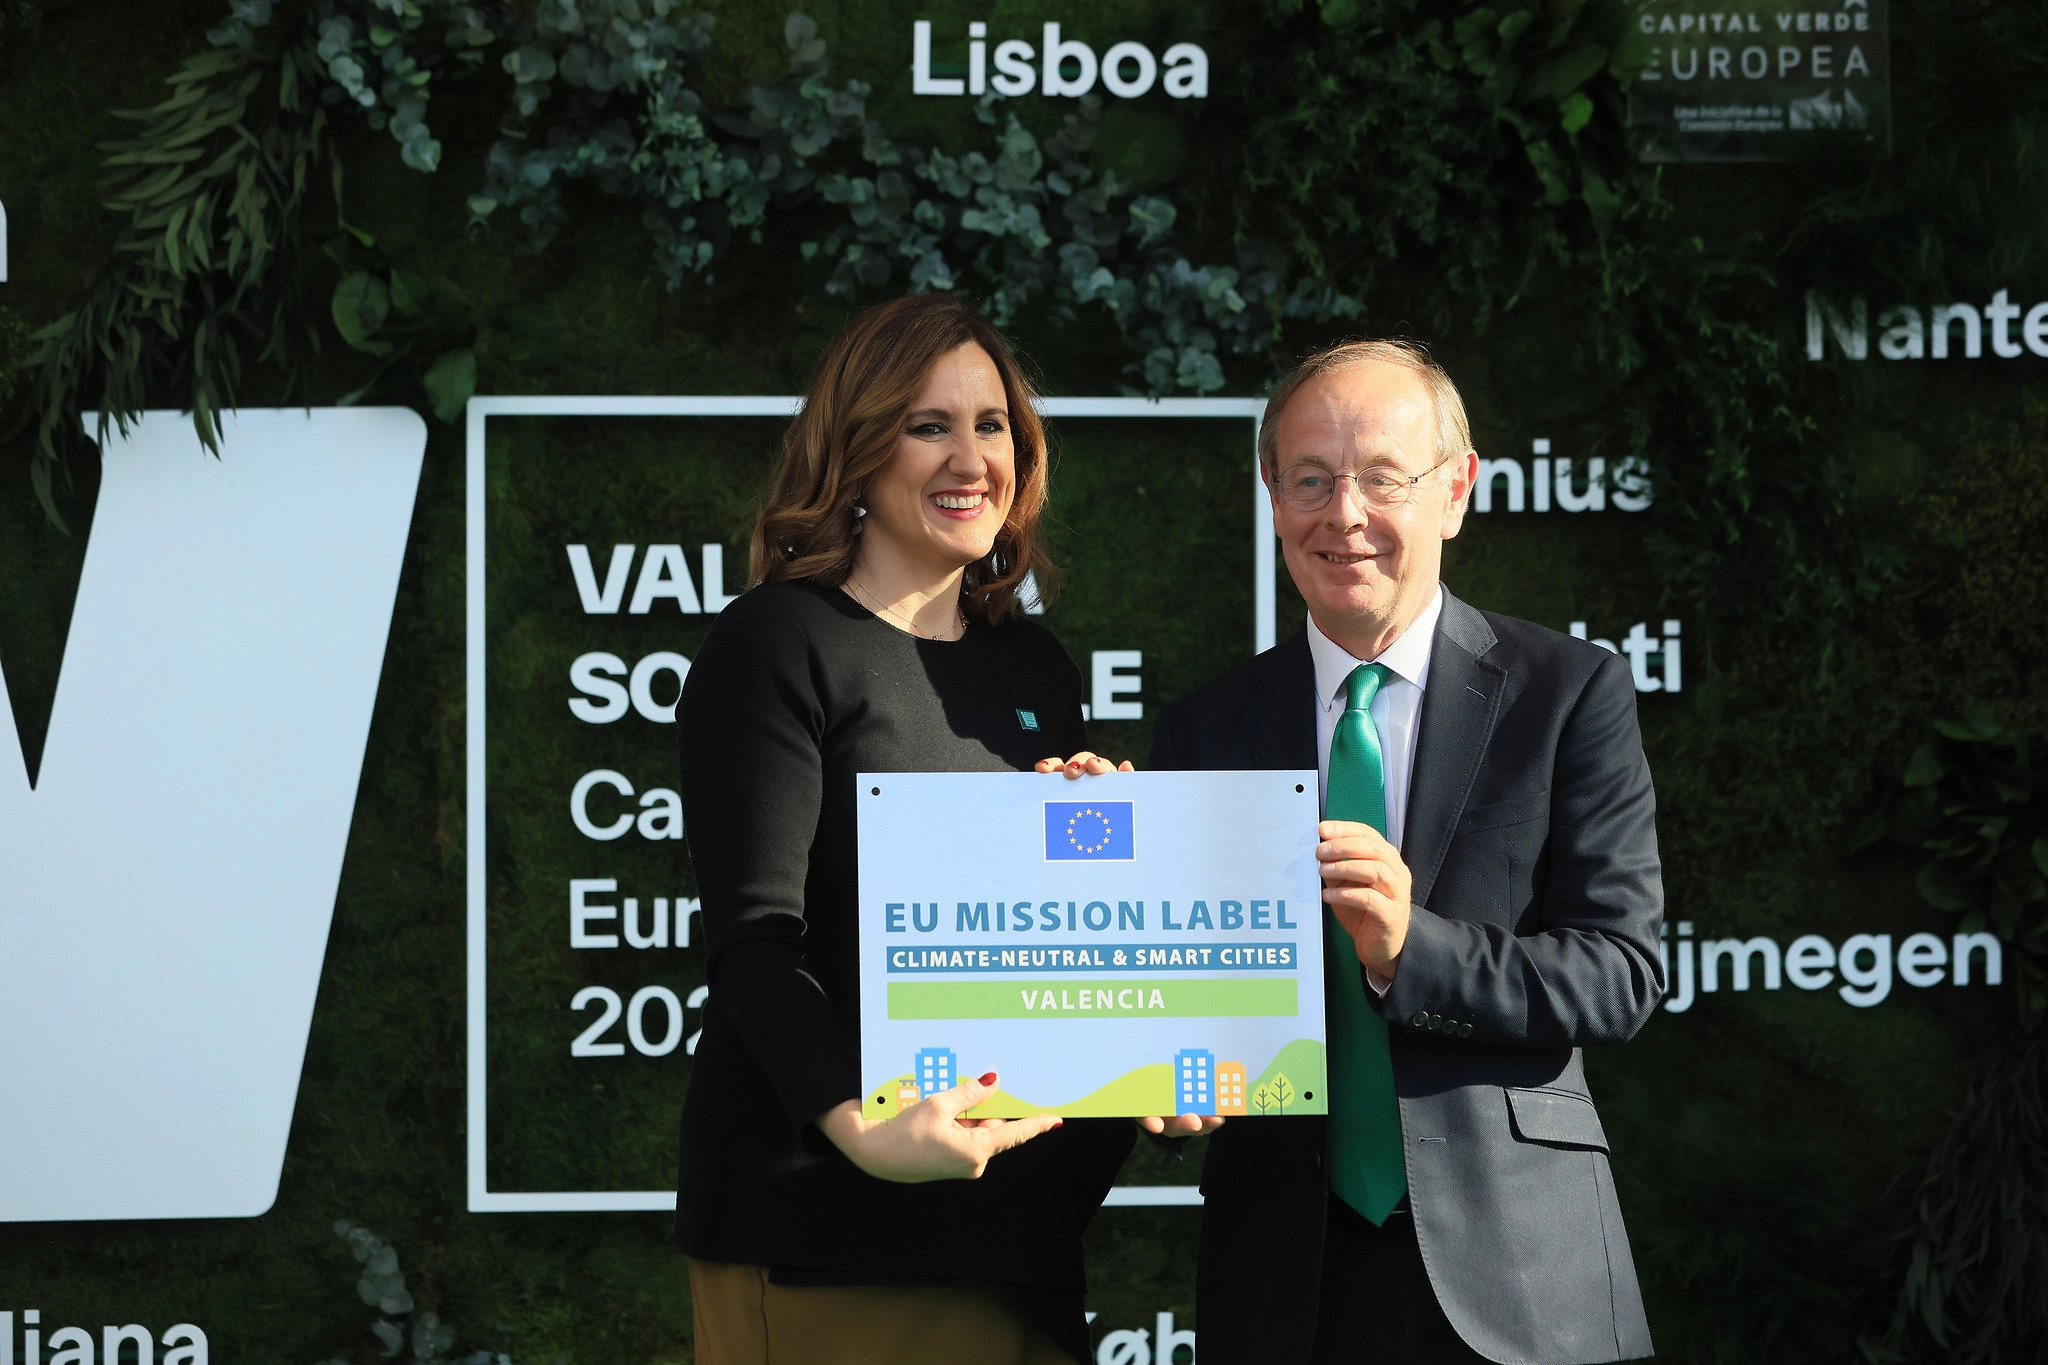 La alcaldesa recibe el titulo de capital verde europea de manos del subsecretario europeo de Medio Ambiente